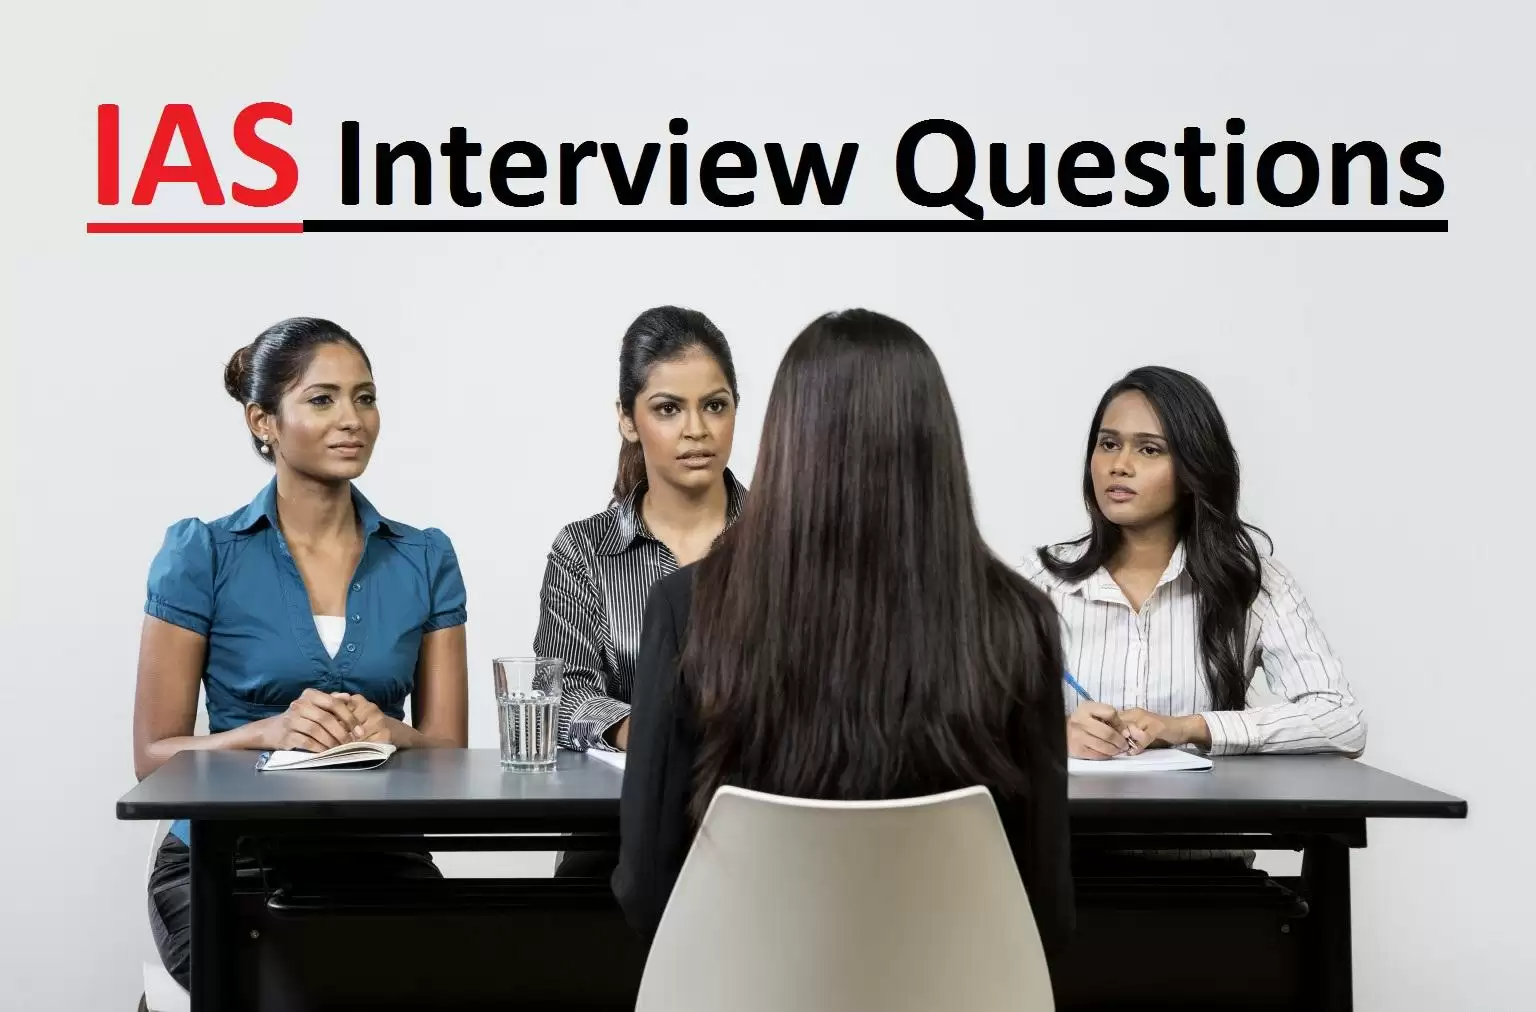 जाने आईएएस इंटरव्यू में पूछे जाने वाले कुछ रोचक सवाल